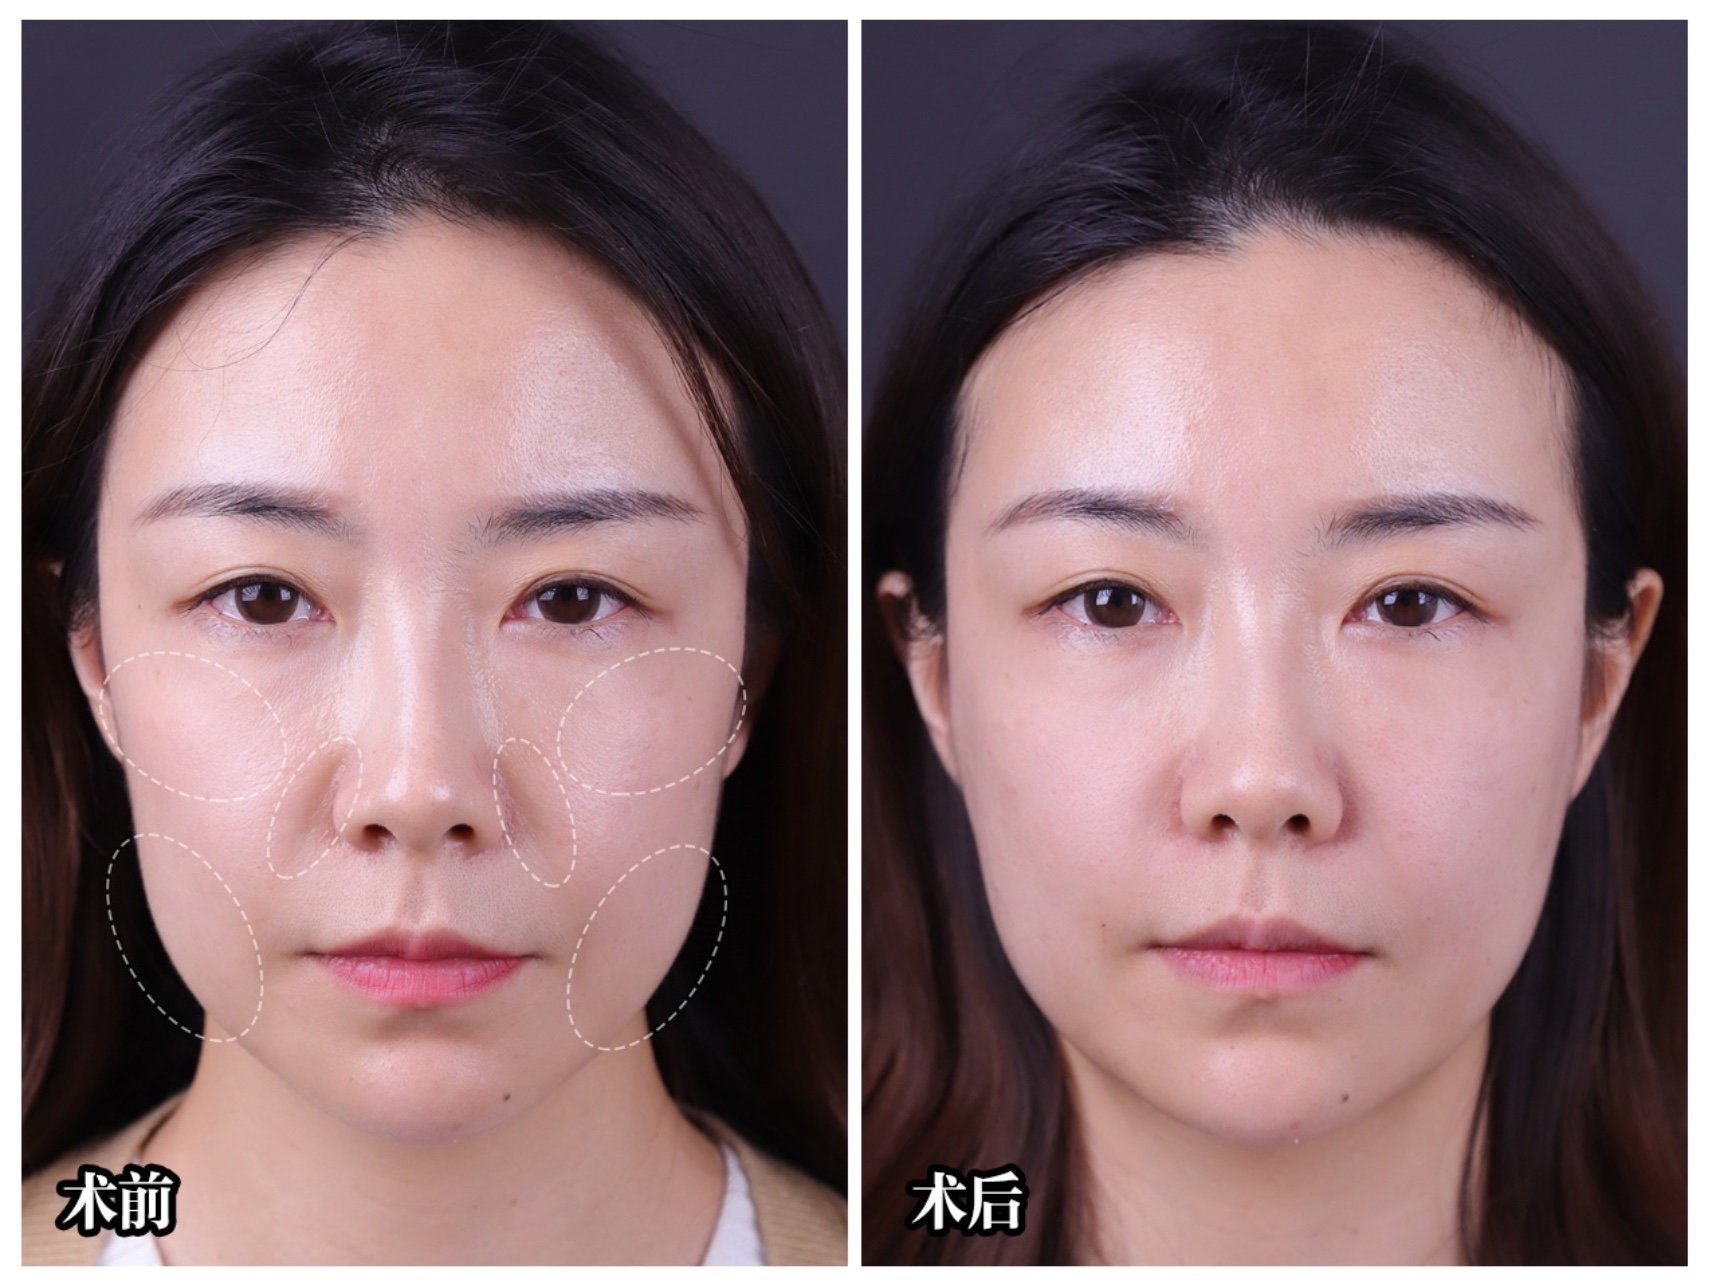 玻尿酸充填物的受欢迎原因和优势是什么?可以正常洗脸化妆吗?